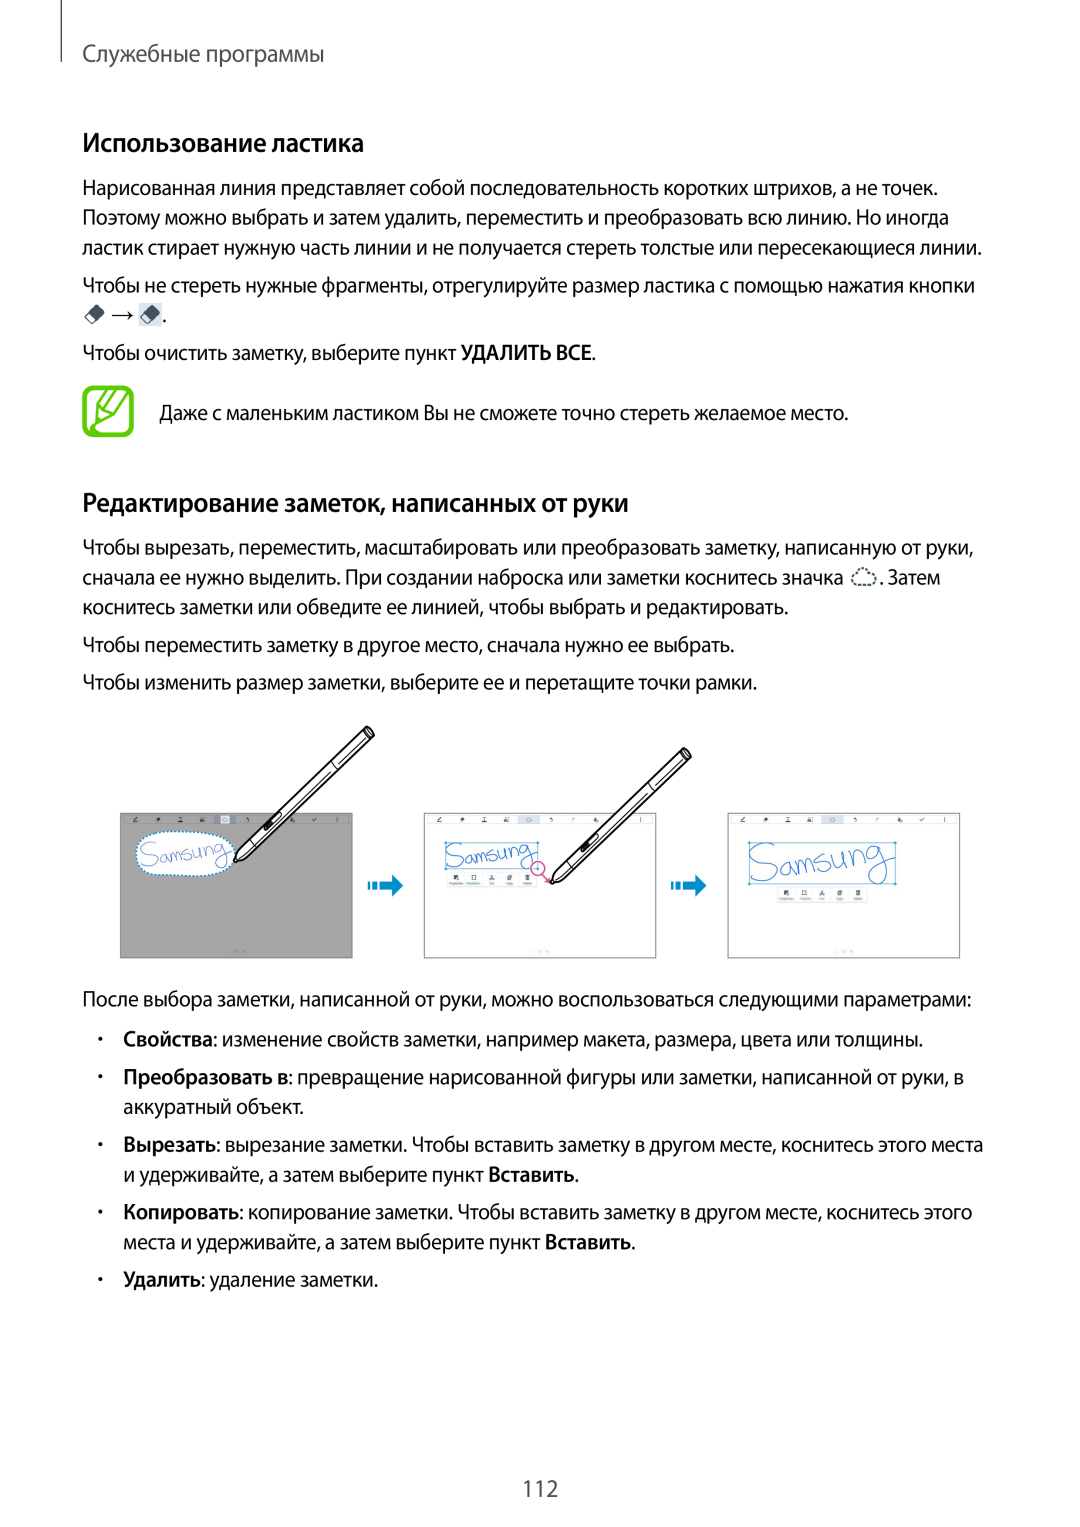 Samsung SM-P9000ZKASEB manual Использование ластика, Редактирование заметок, написанных от руки, Служебные программы 